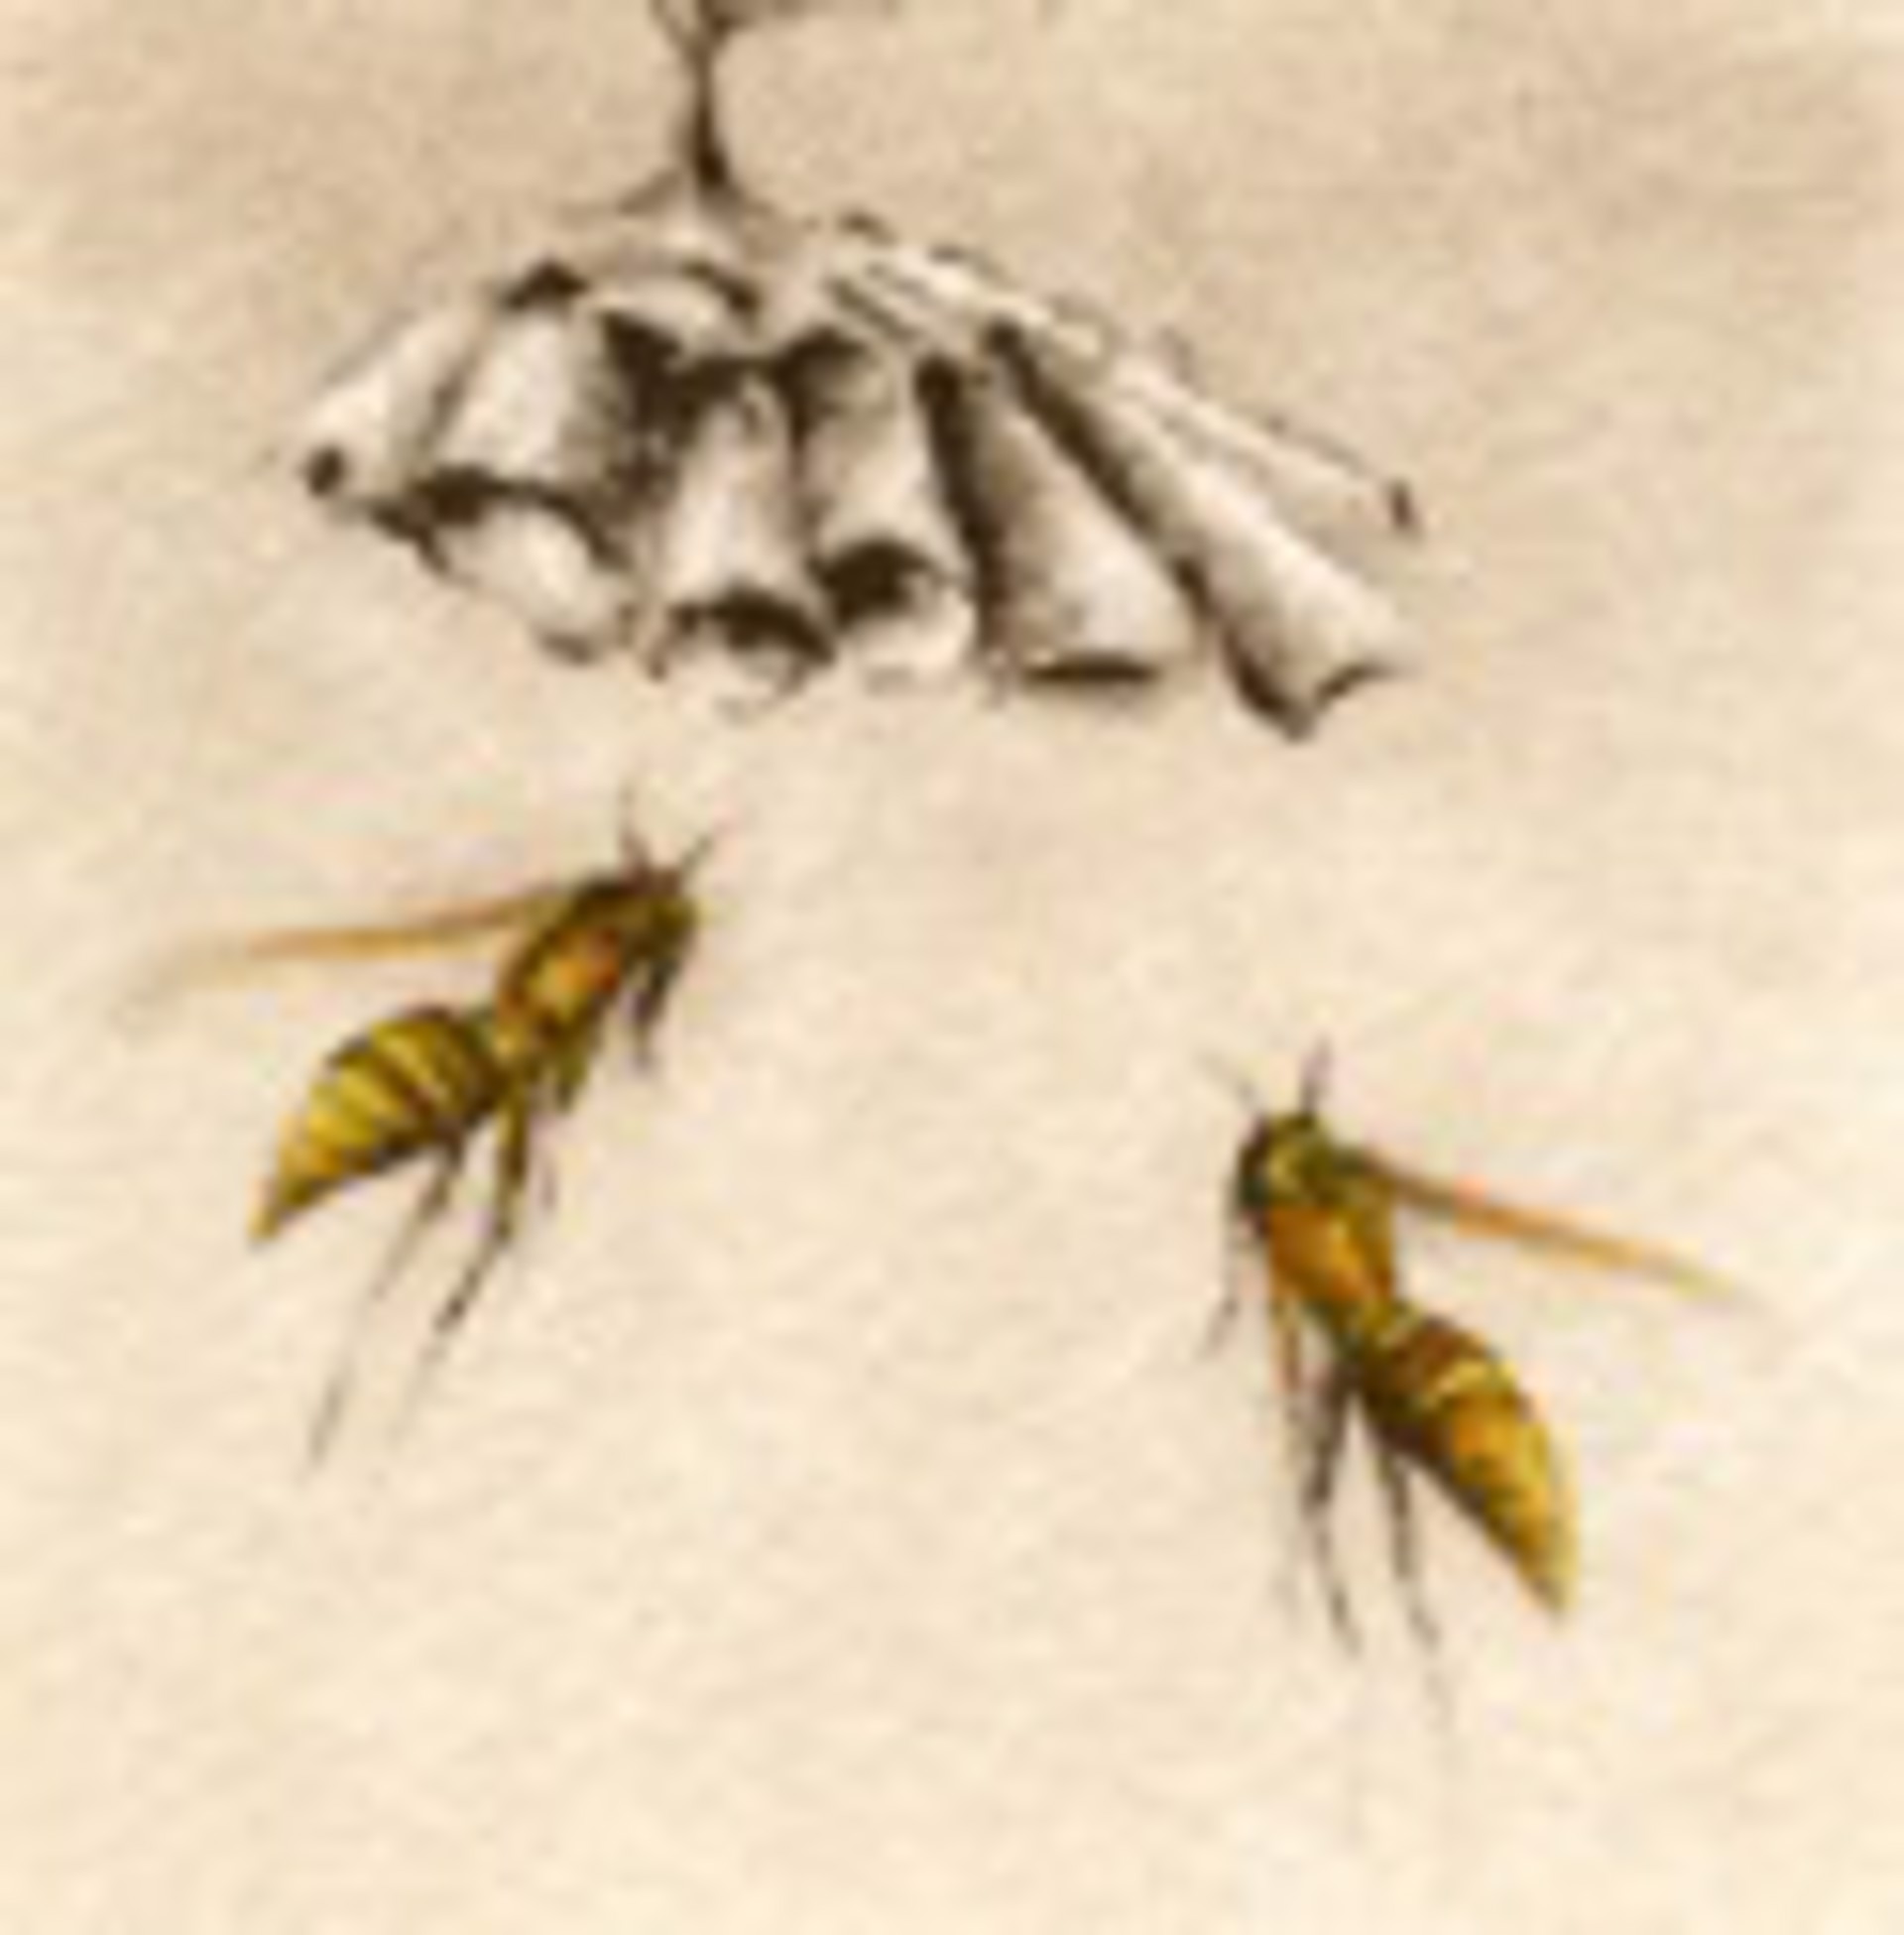 Paper Wasps_unframed, #19/100 by Melanie Fain